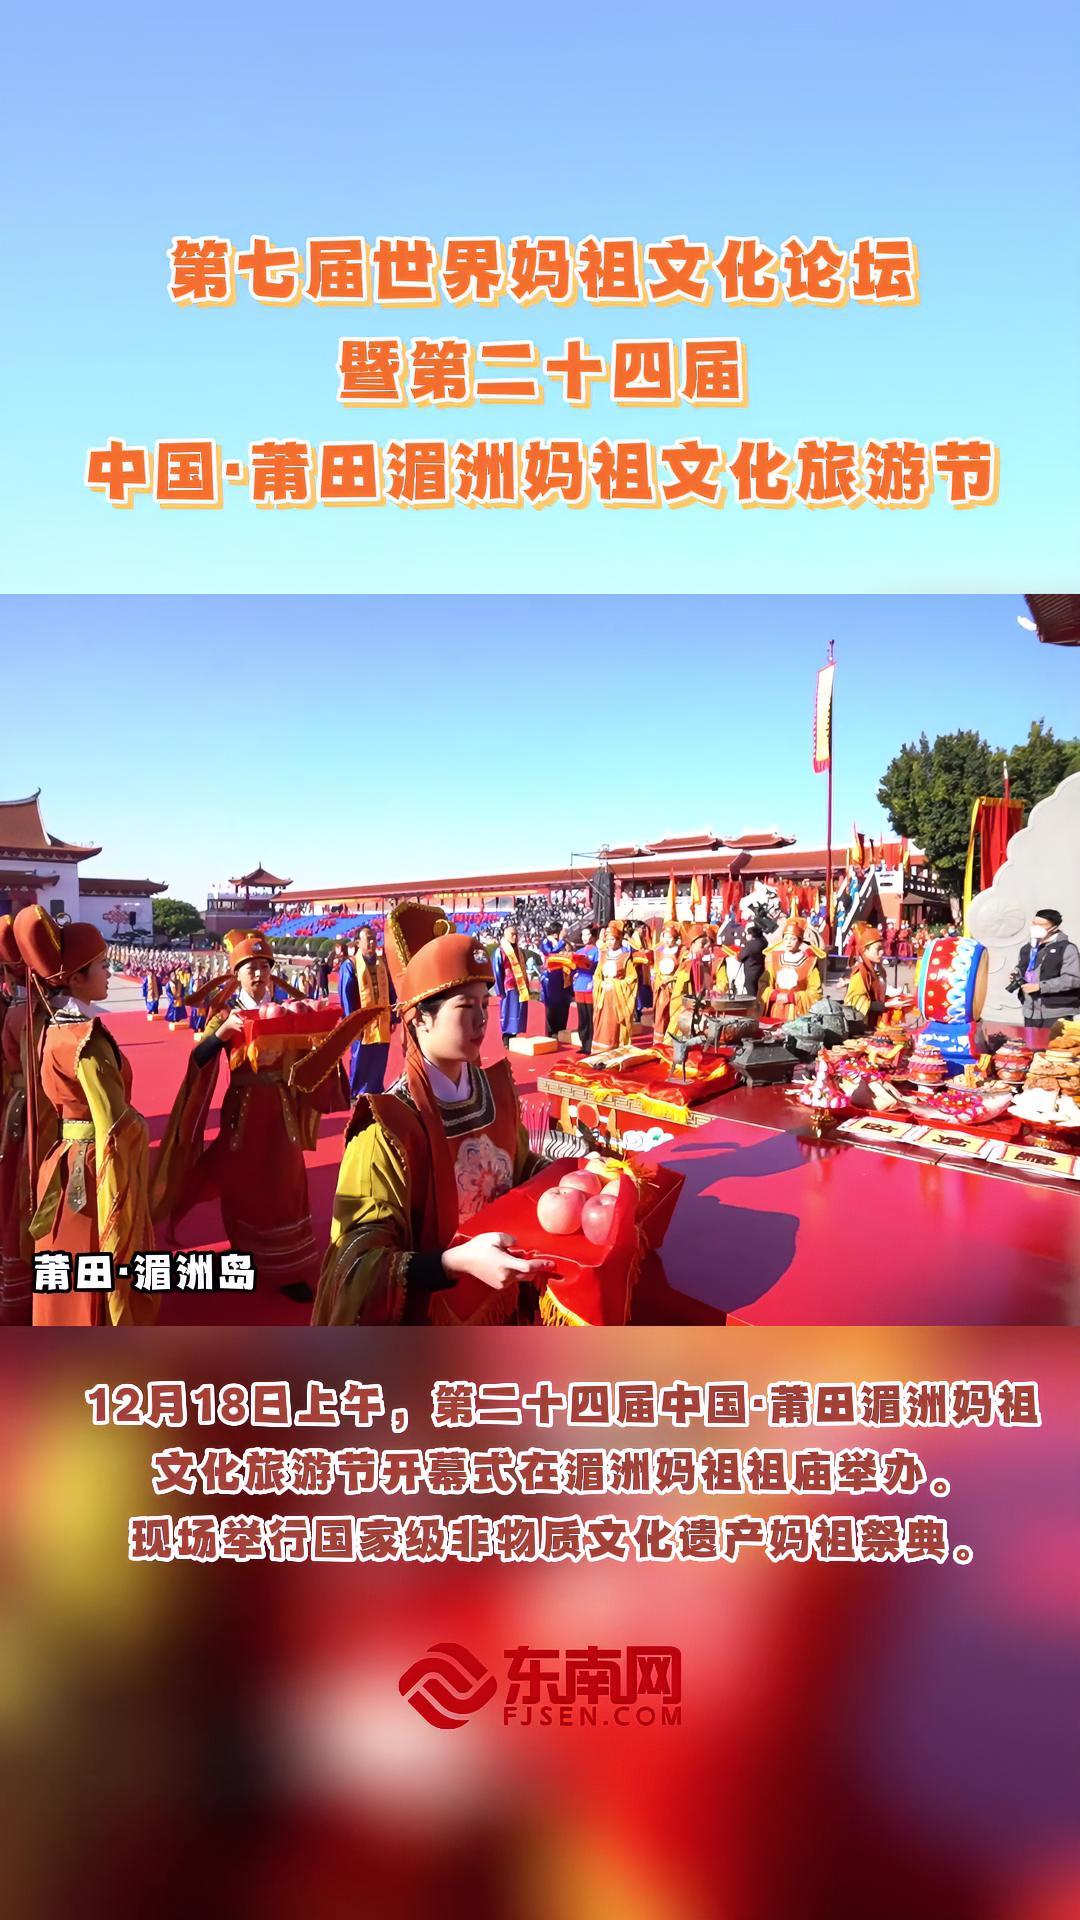 12月18日,第二十四届中国·莆田湄洲妈祖文化旅游节在湄洲岛举办 妈祖